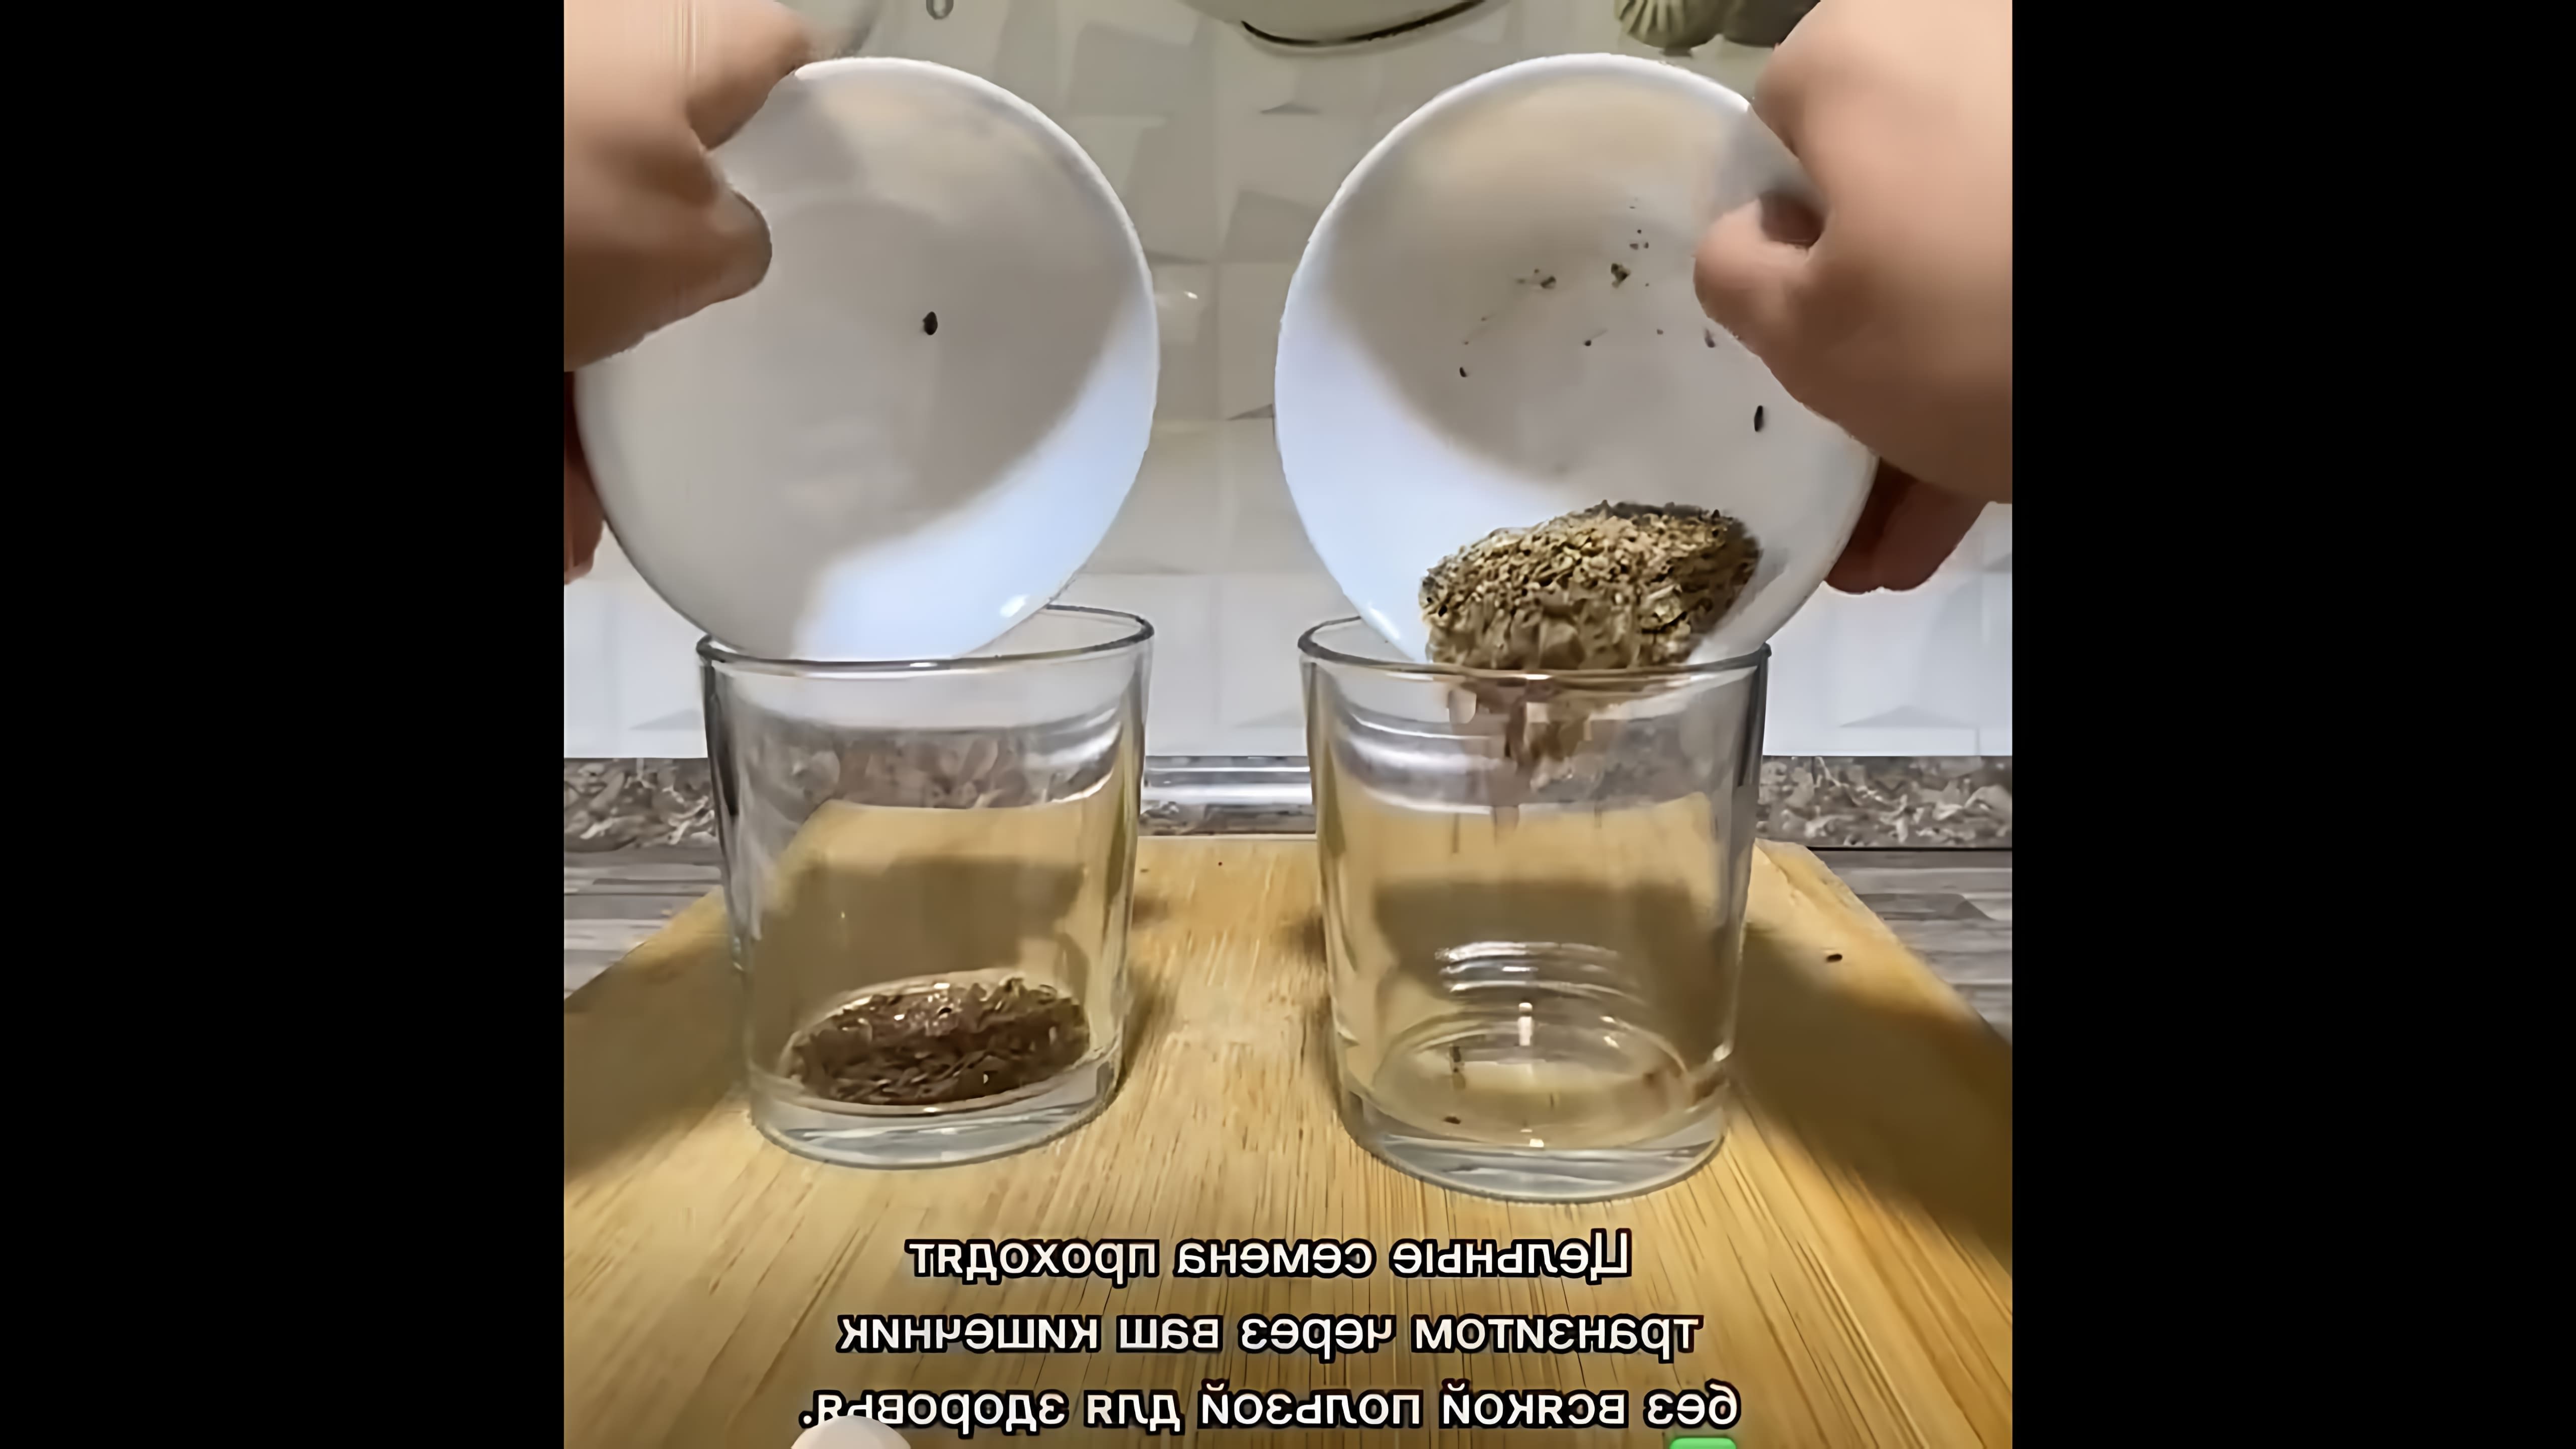 В этом видео-ролике рассказывается о том, как правильно принимать семя льна